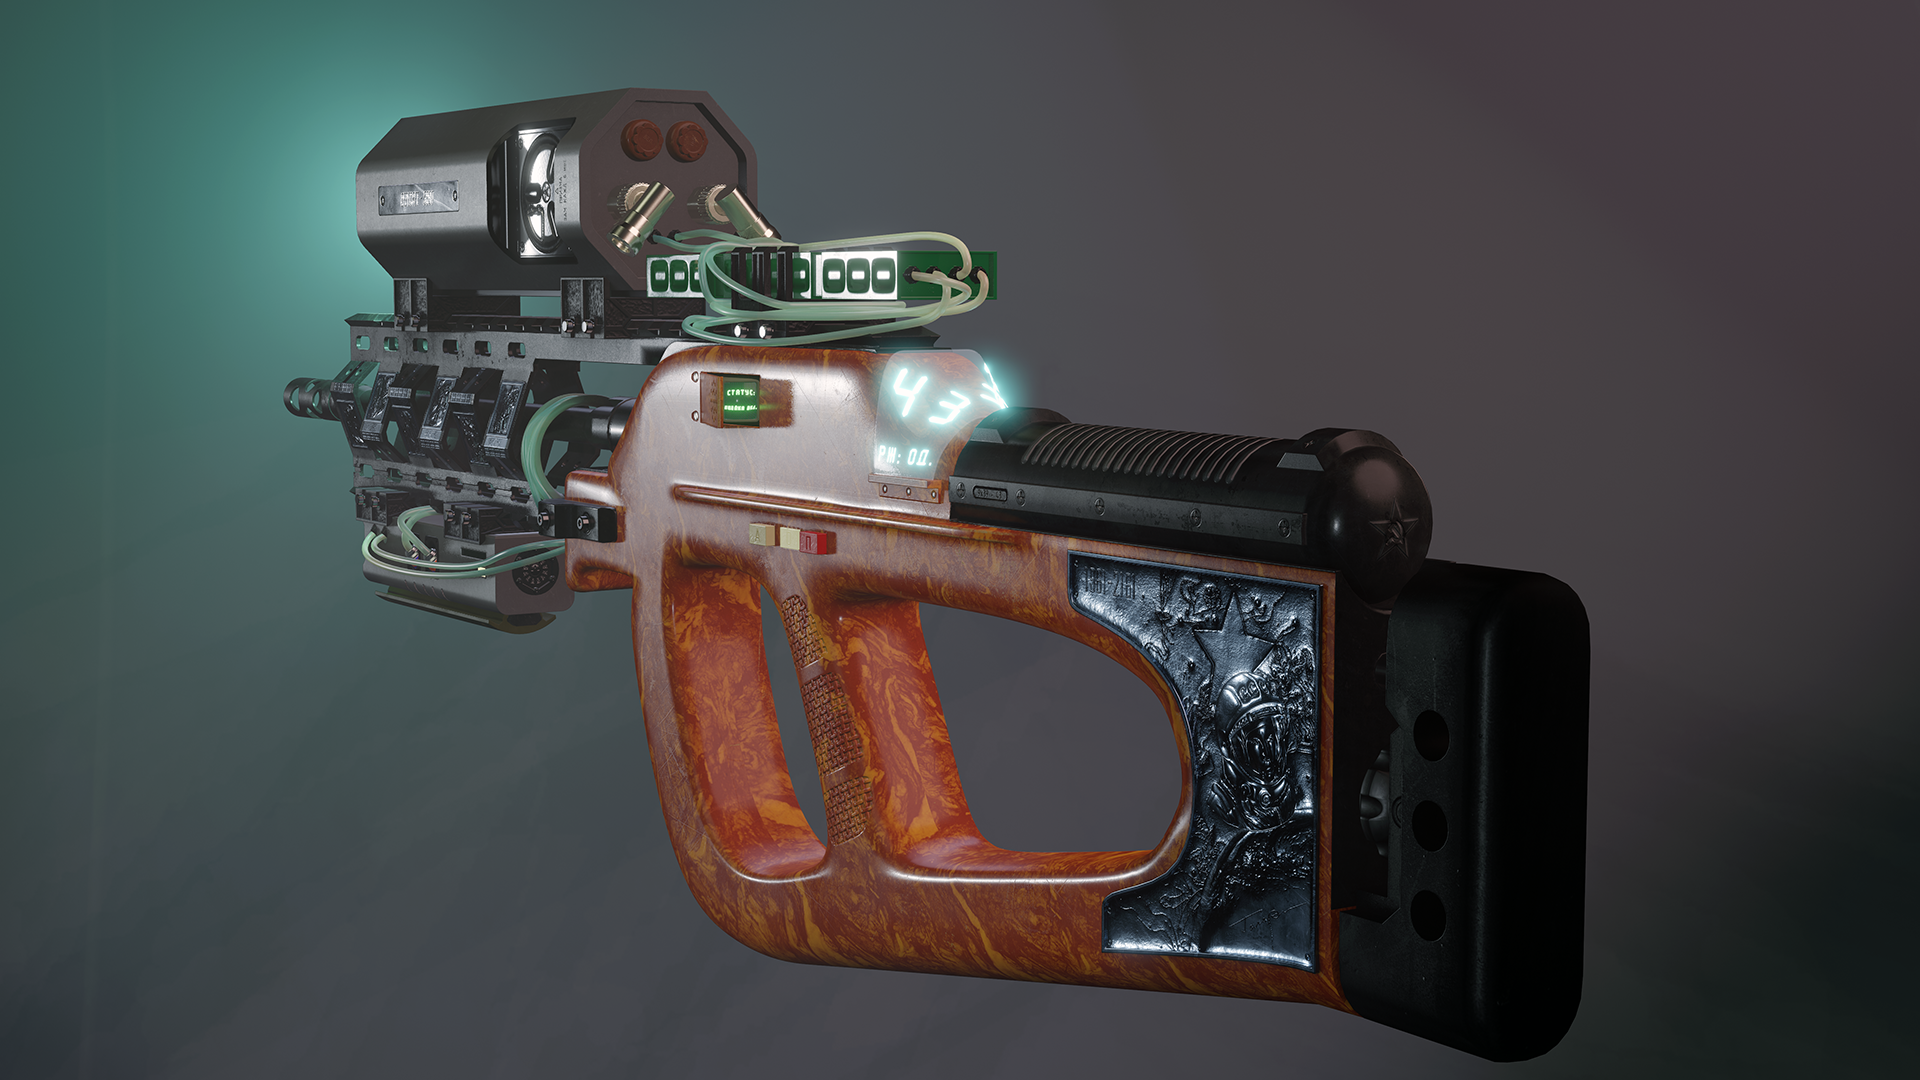 Three D Guns 2 - Sci Fi Sniper Rifle